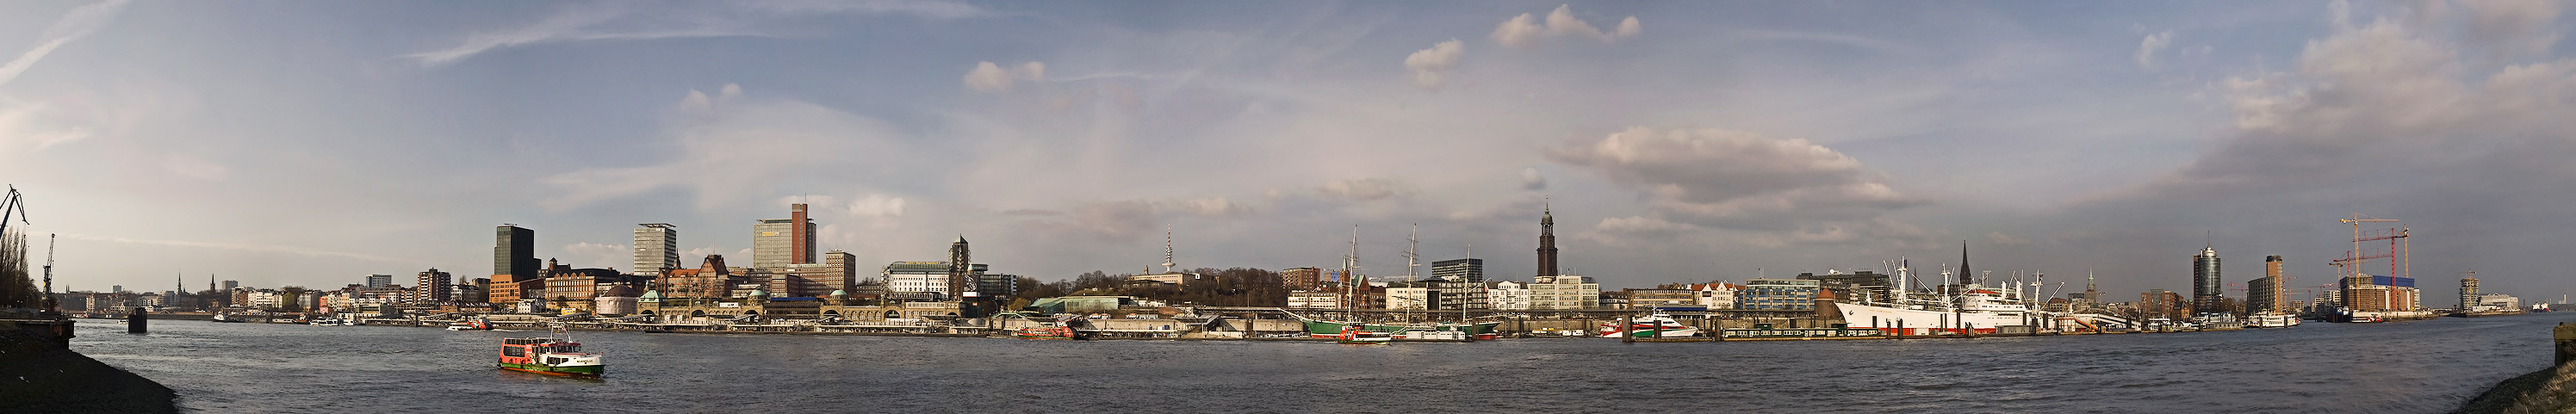 Hafen Hamburg -2-